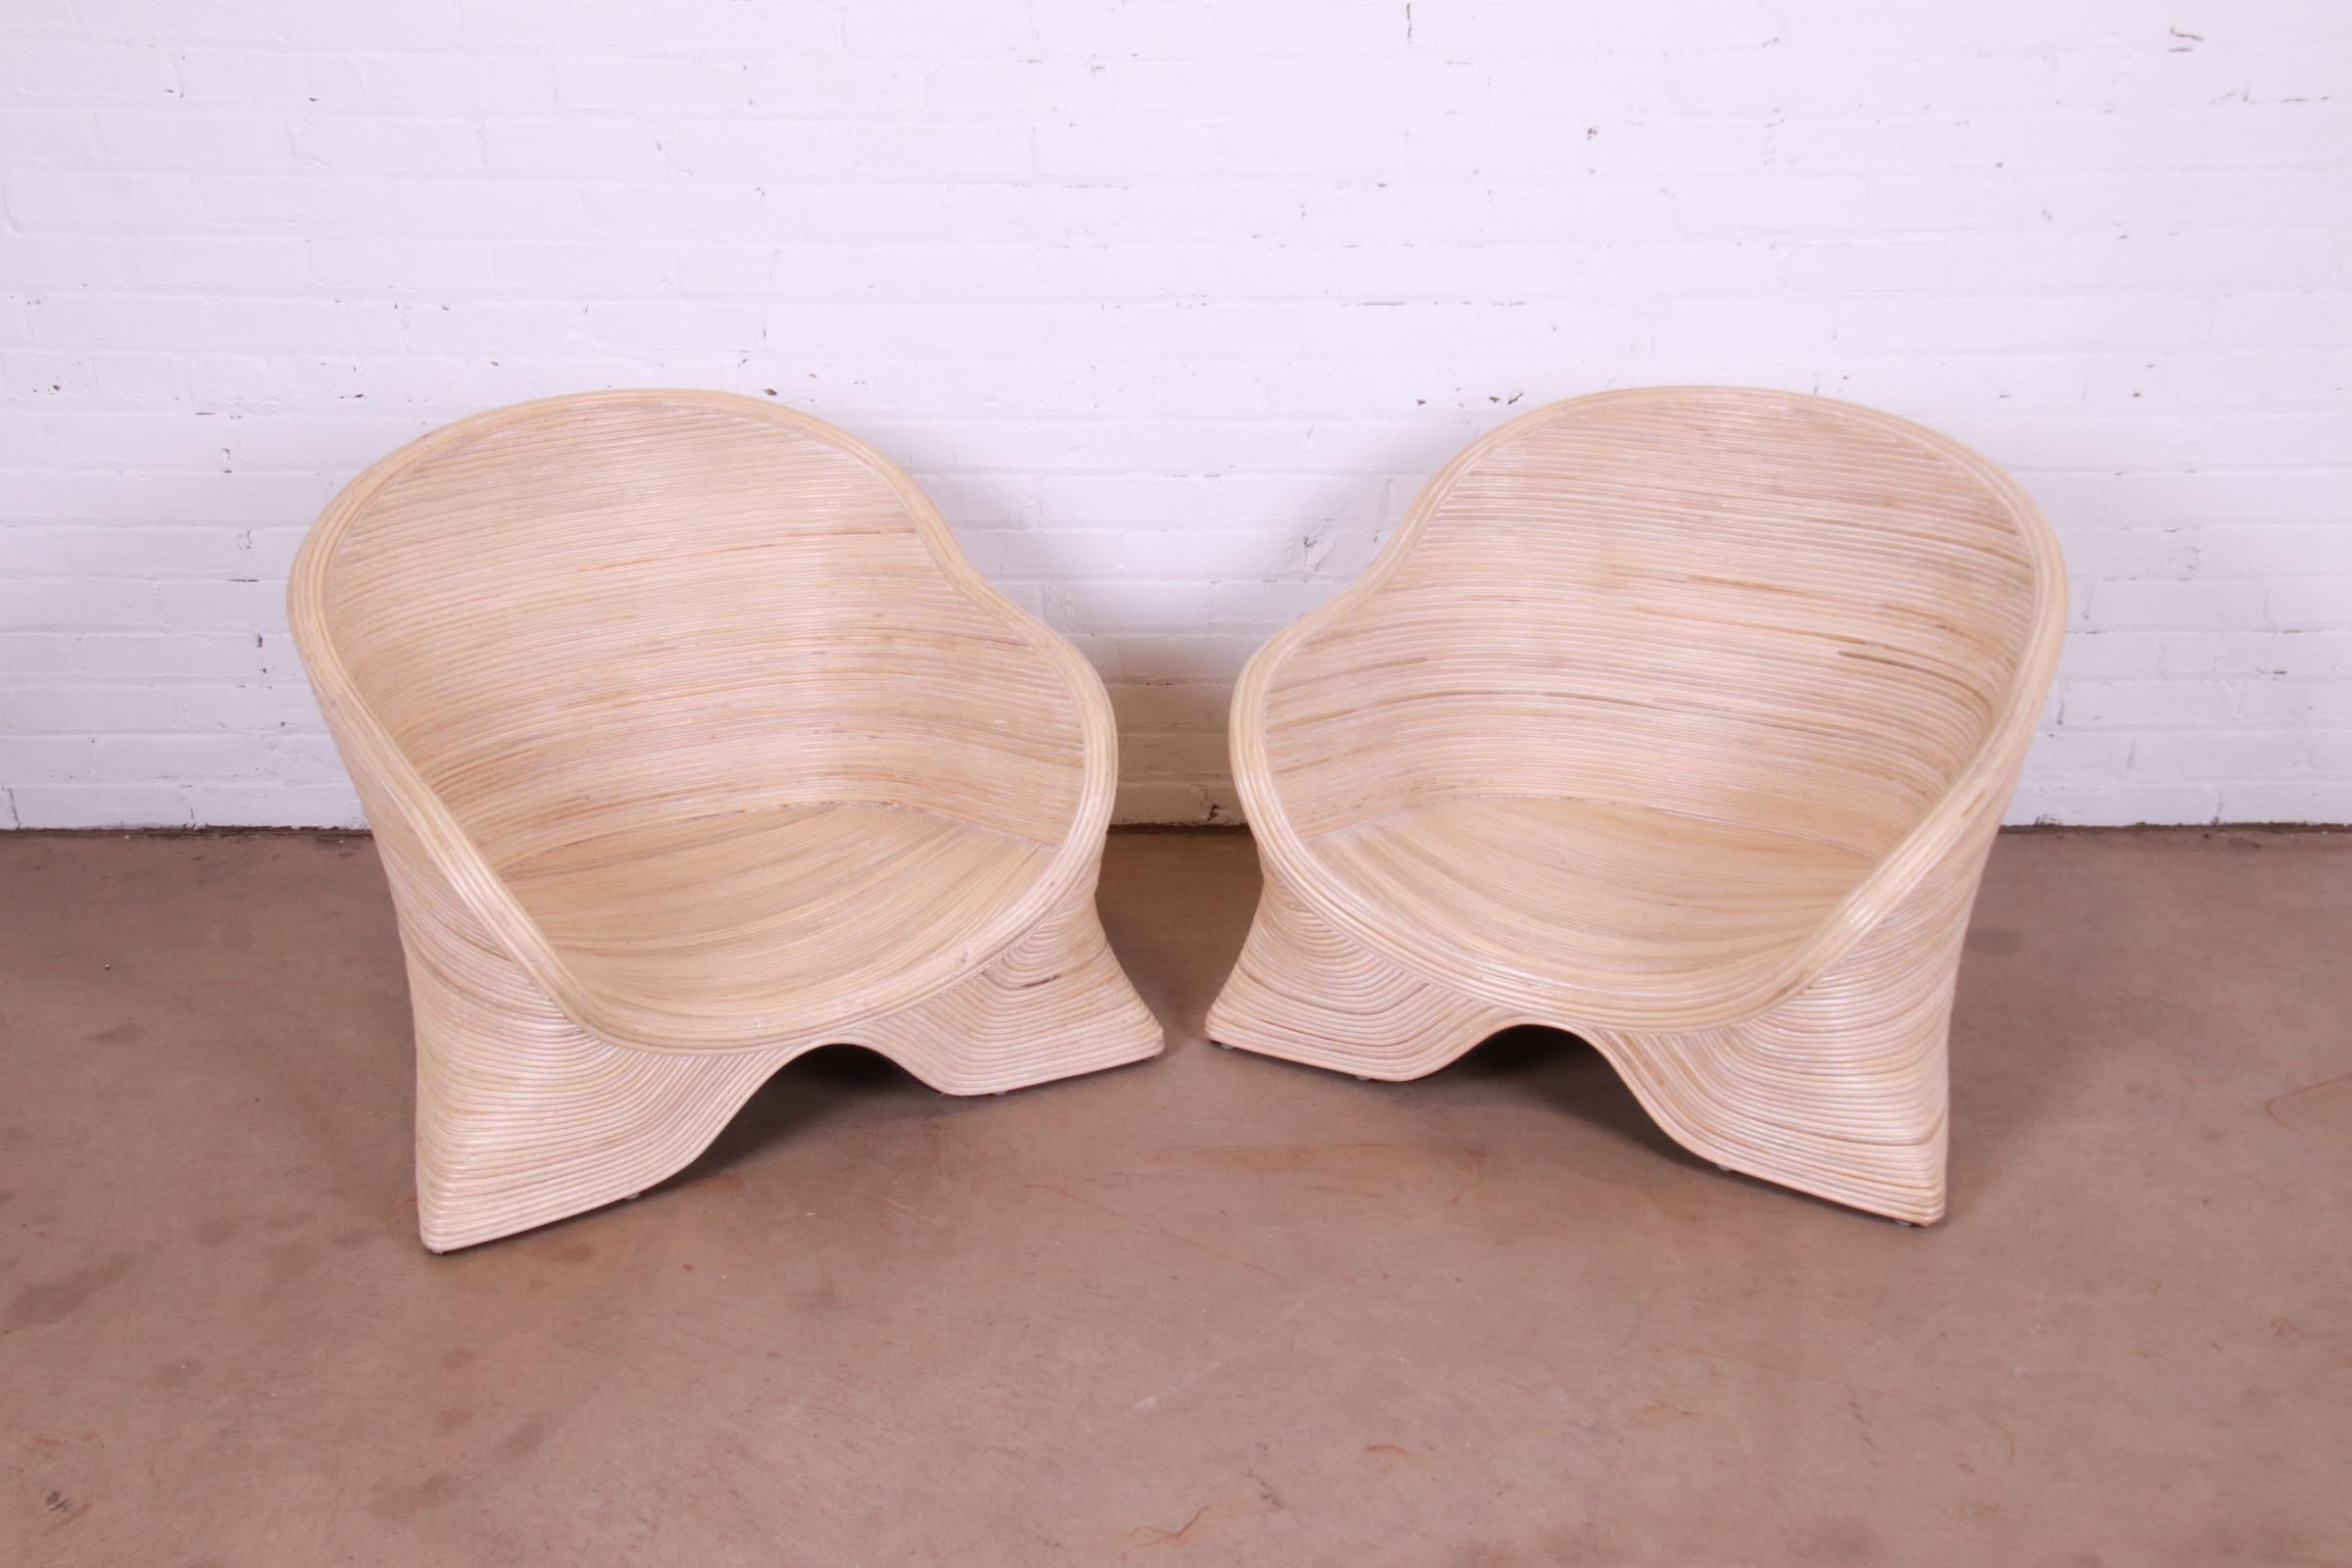 Une magnifique paire de chaises basses sculpturales en rotin fendu Organic Modern.

Par Betty Cobonpue

Circa 1980

Dimensions : 32 